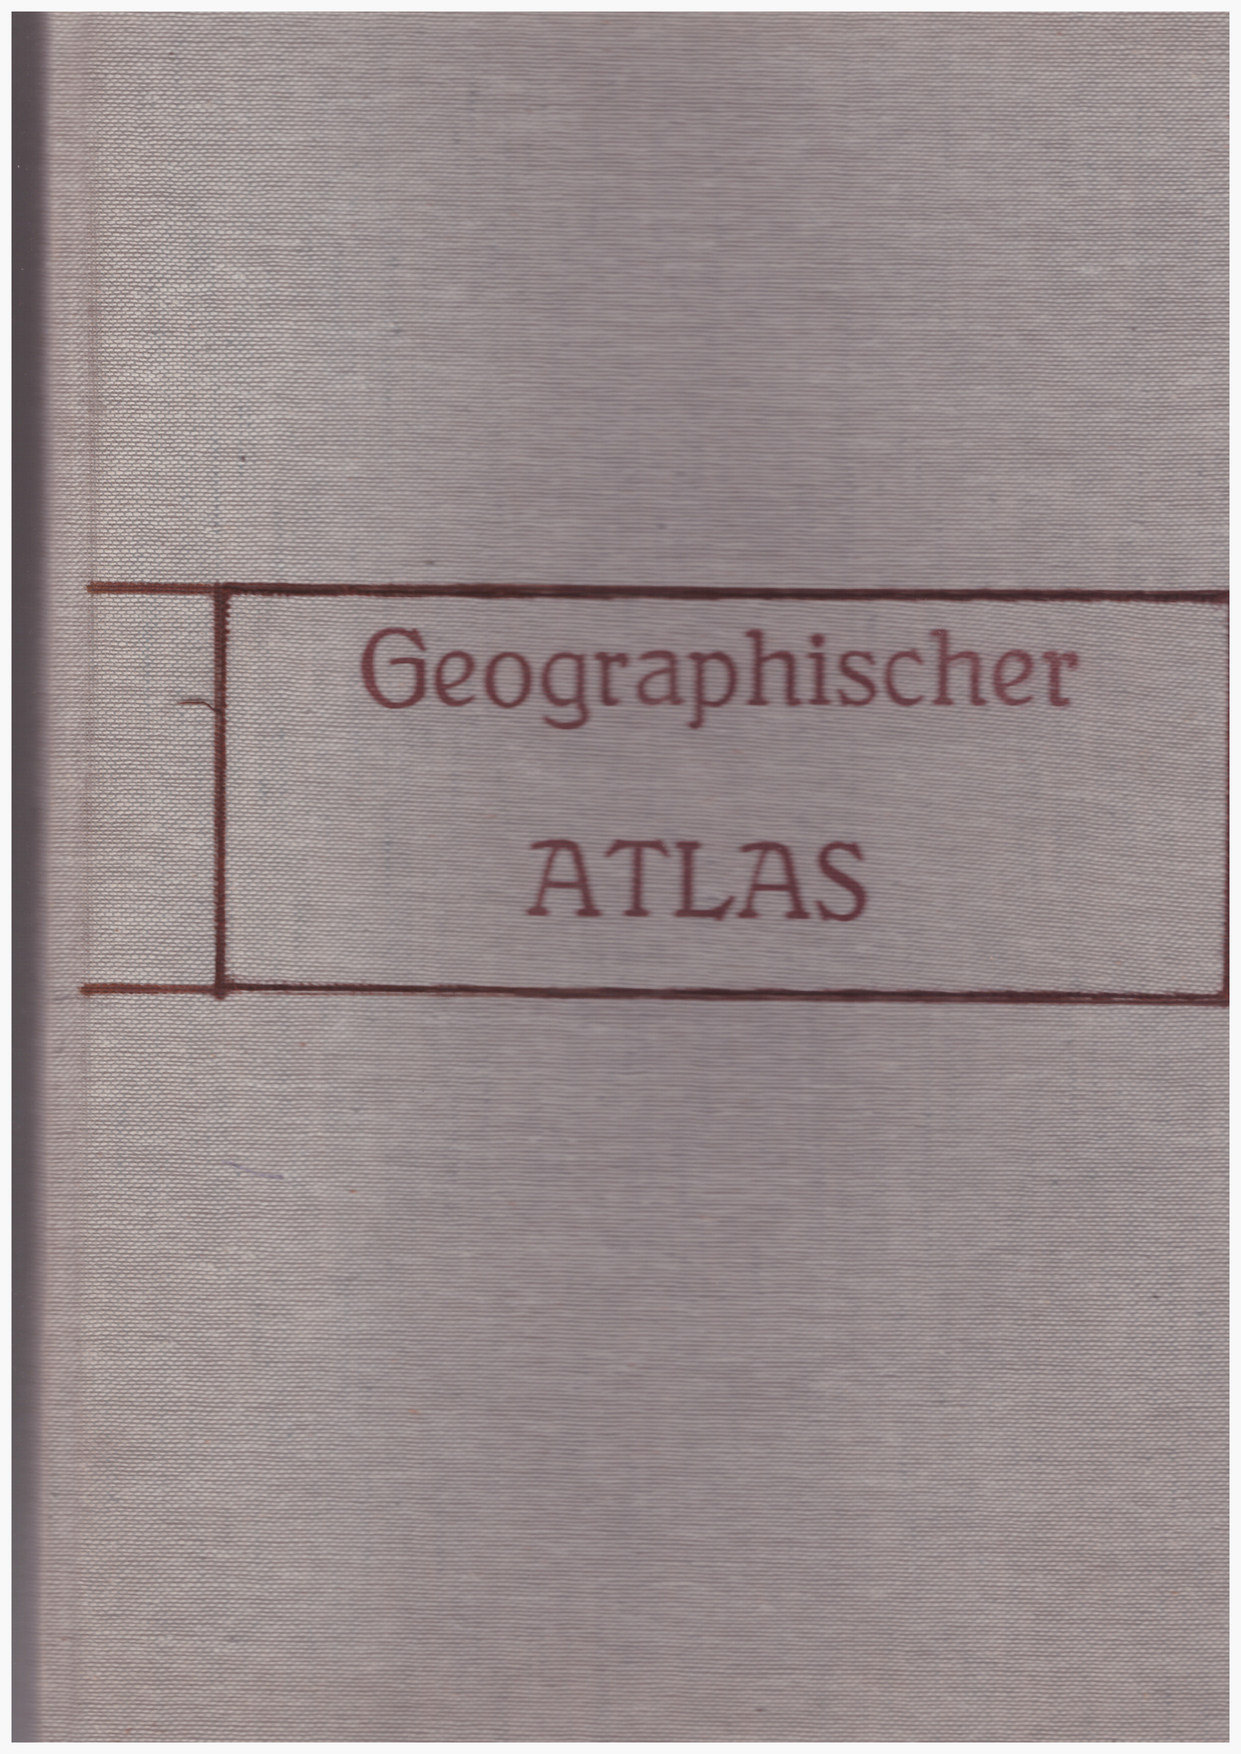 Geographischer atlas